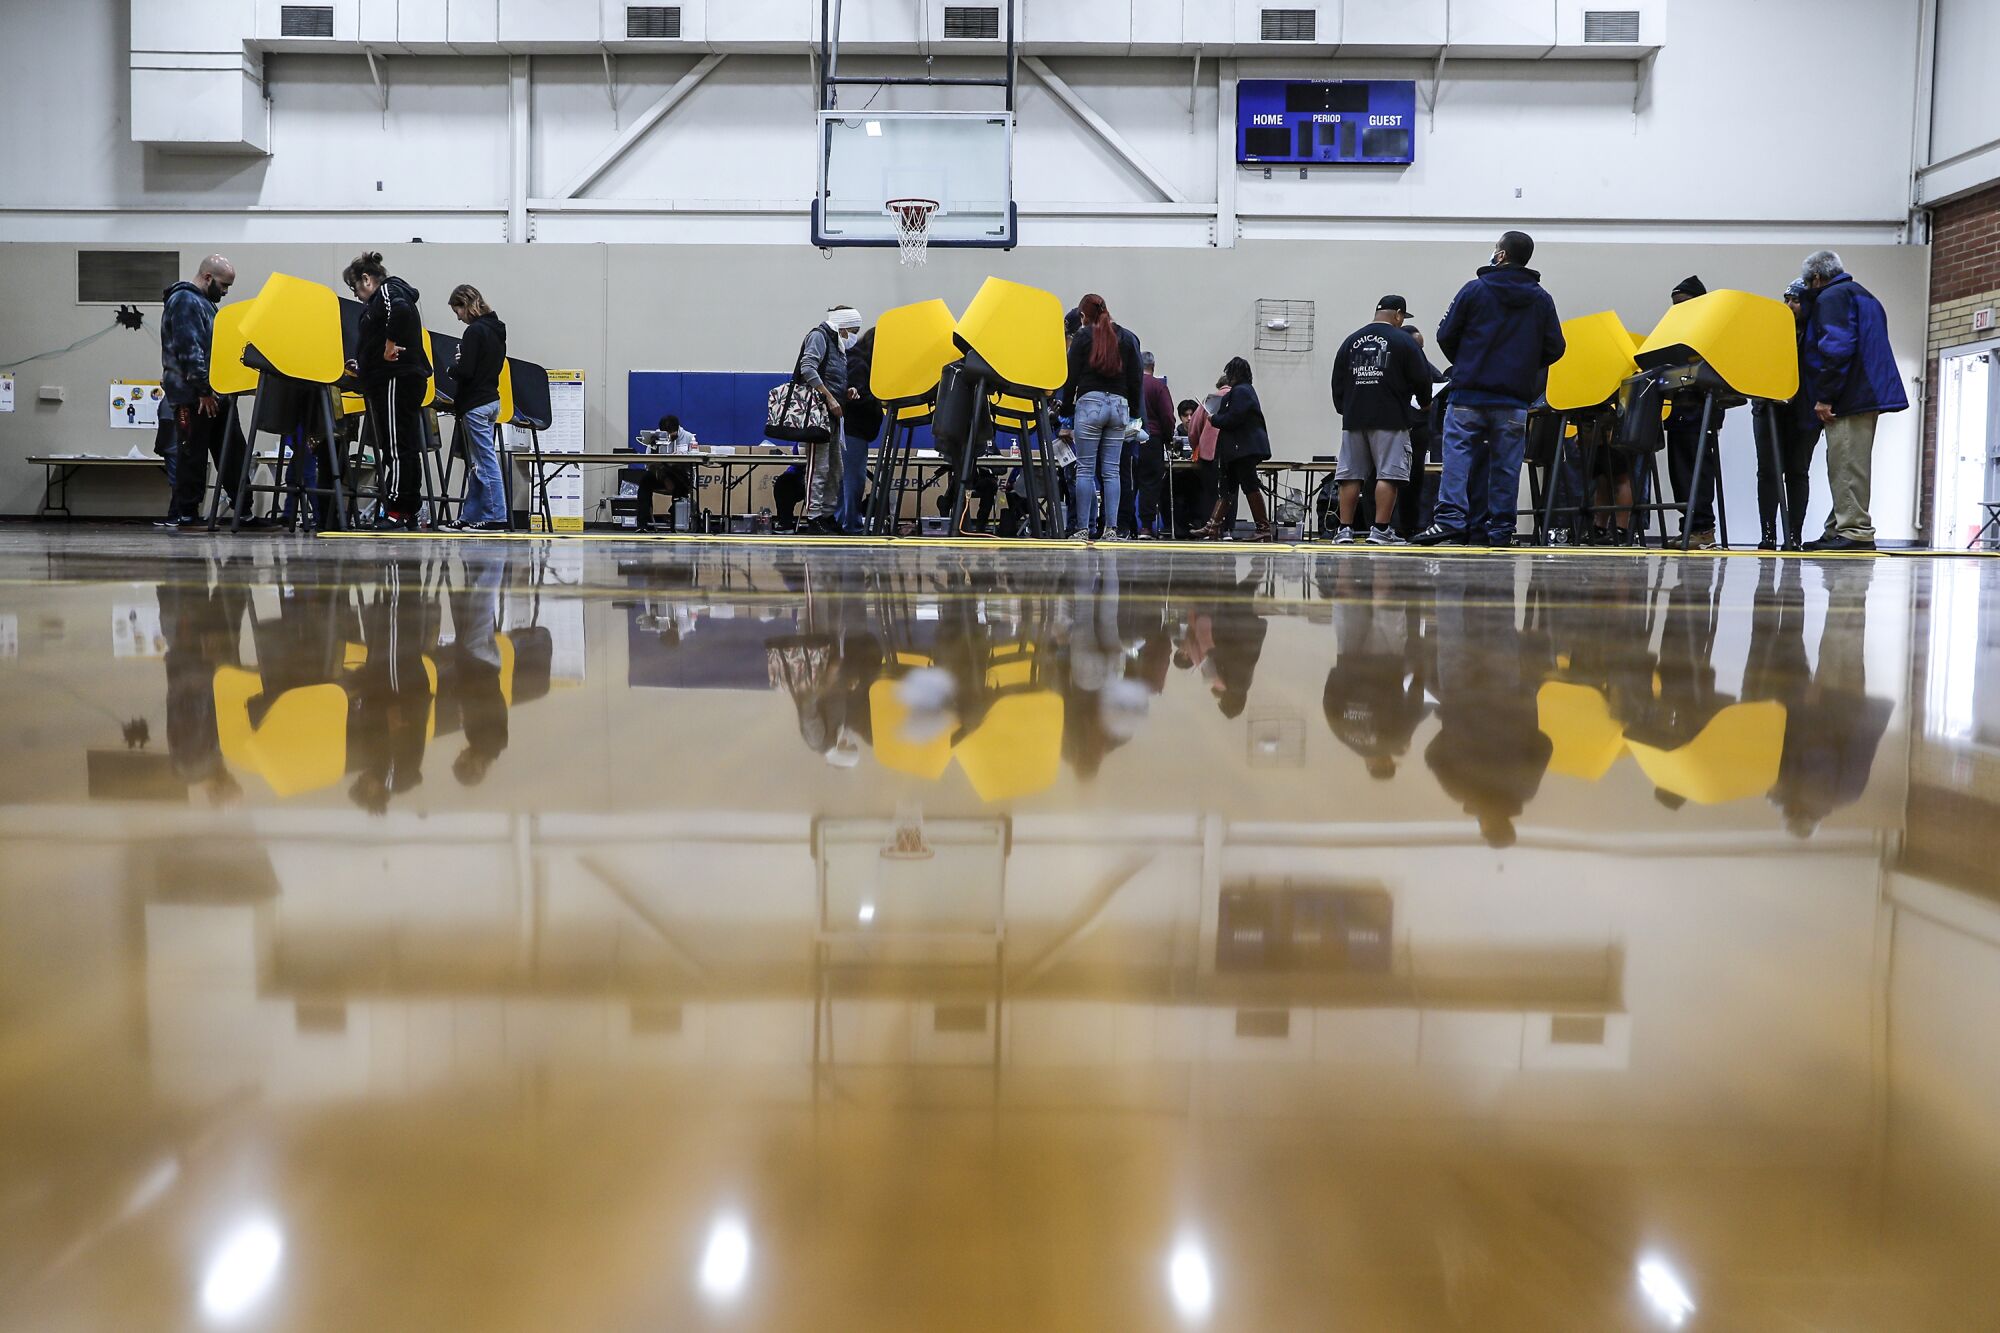 Les gens se tiennent devant des isoloirs jaunes dans un gymnase de basket-ball